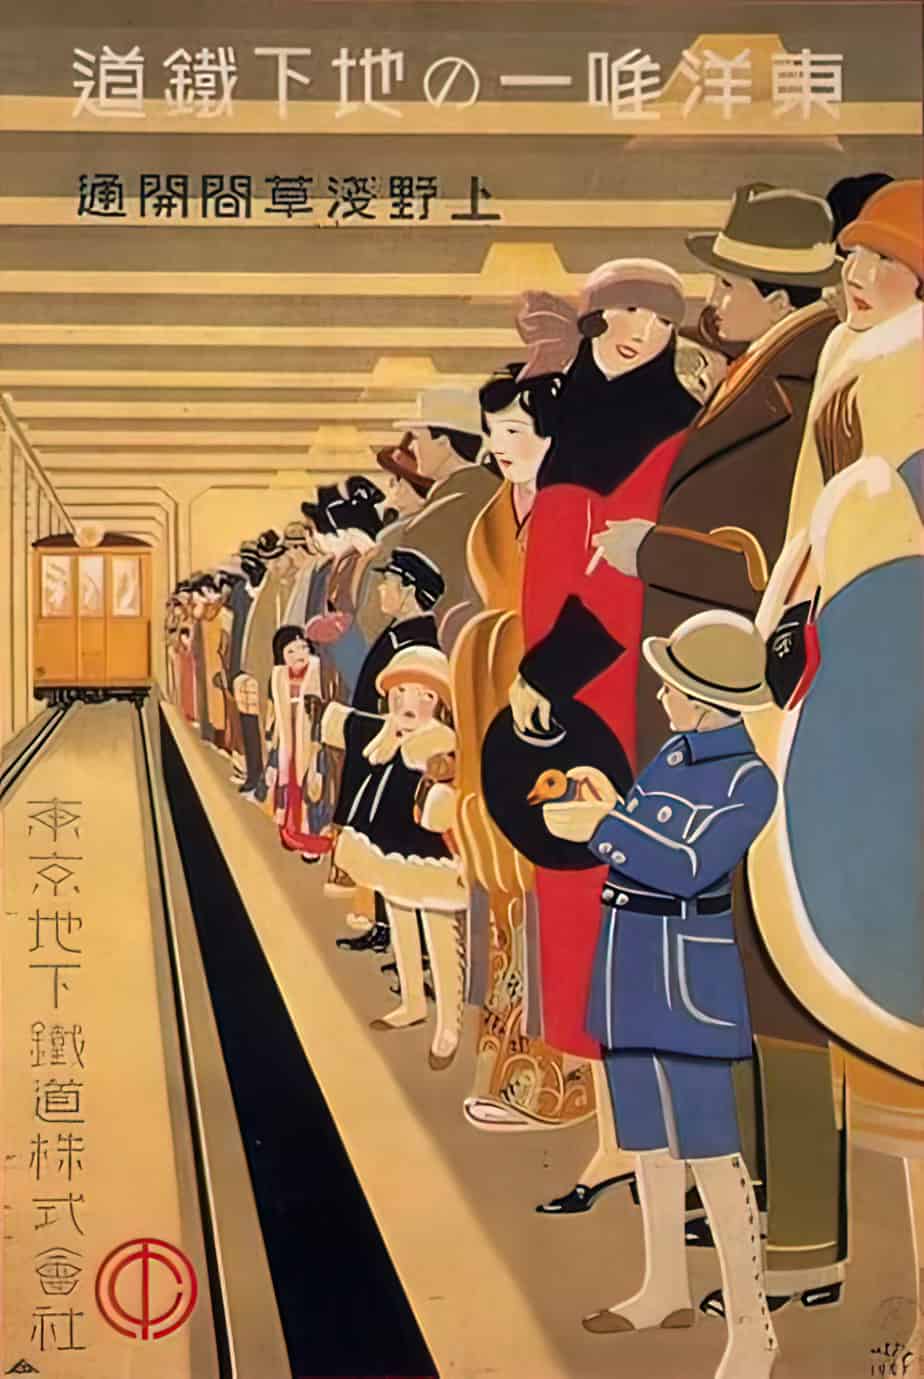 Subway Tokyo poster by Sugiura Hisui, ca.1927